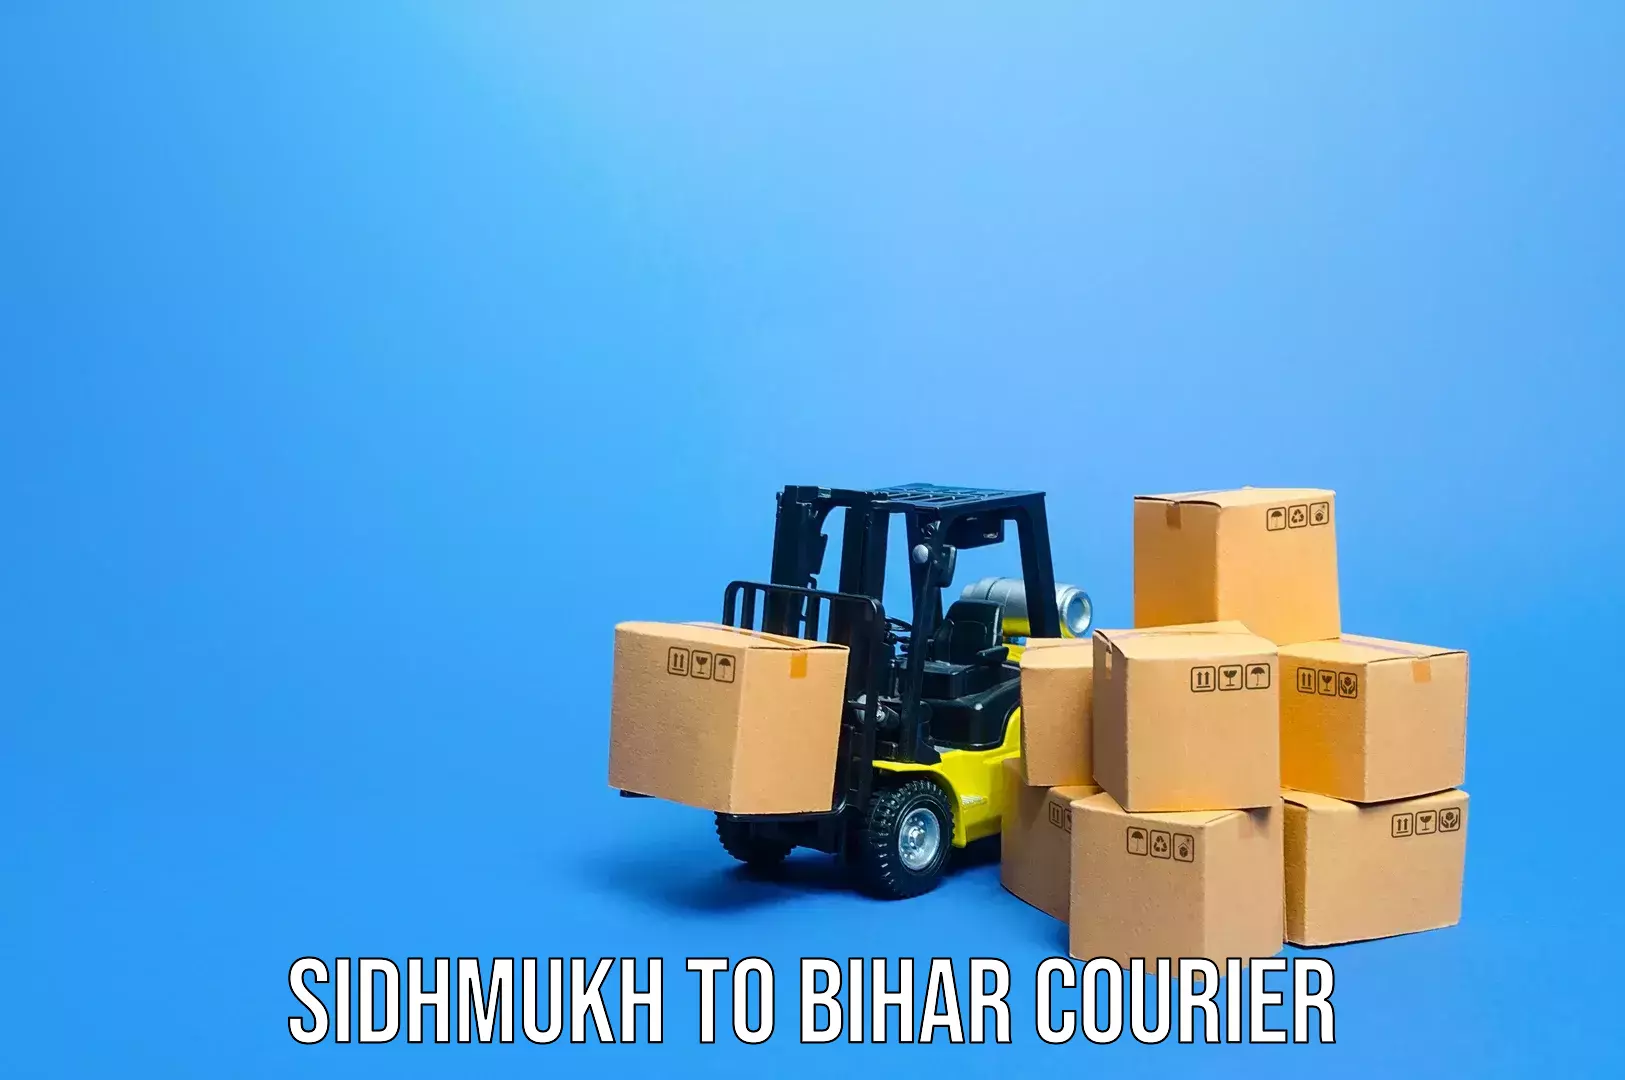 Baggage transport management Sidhmukh to Bihar